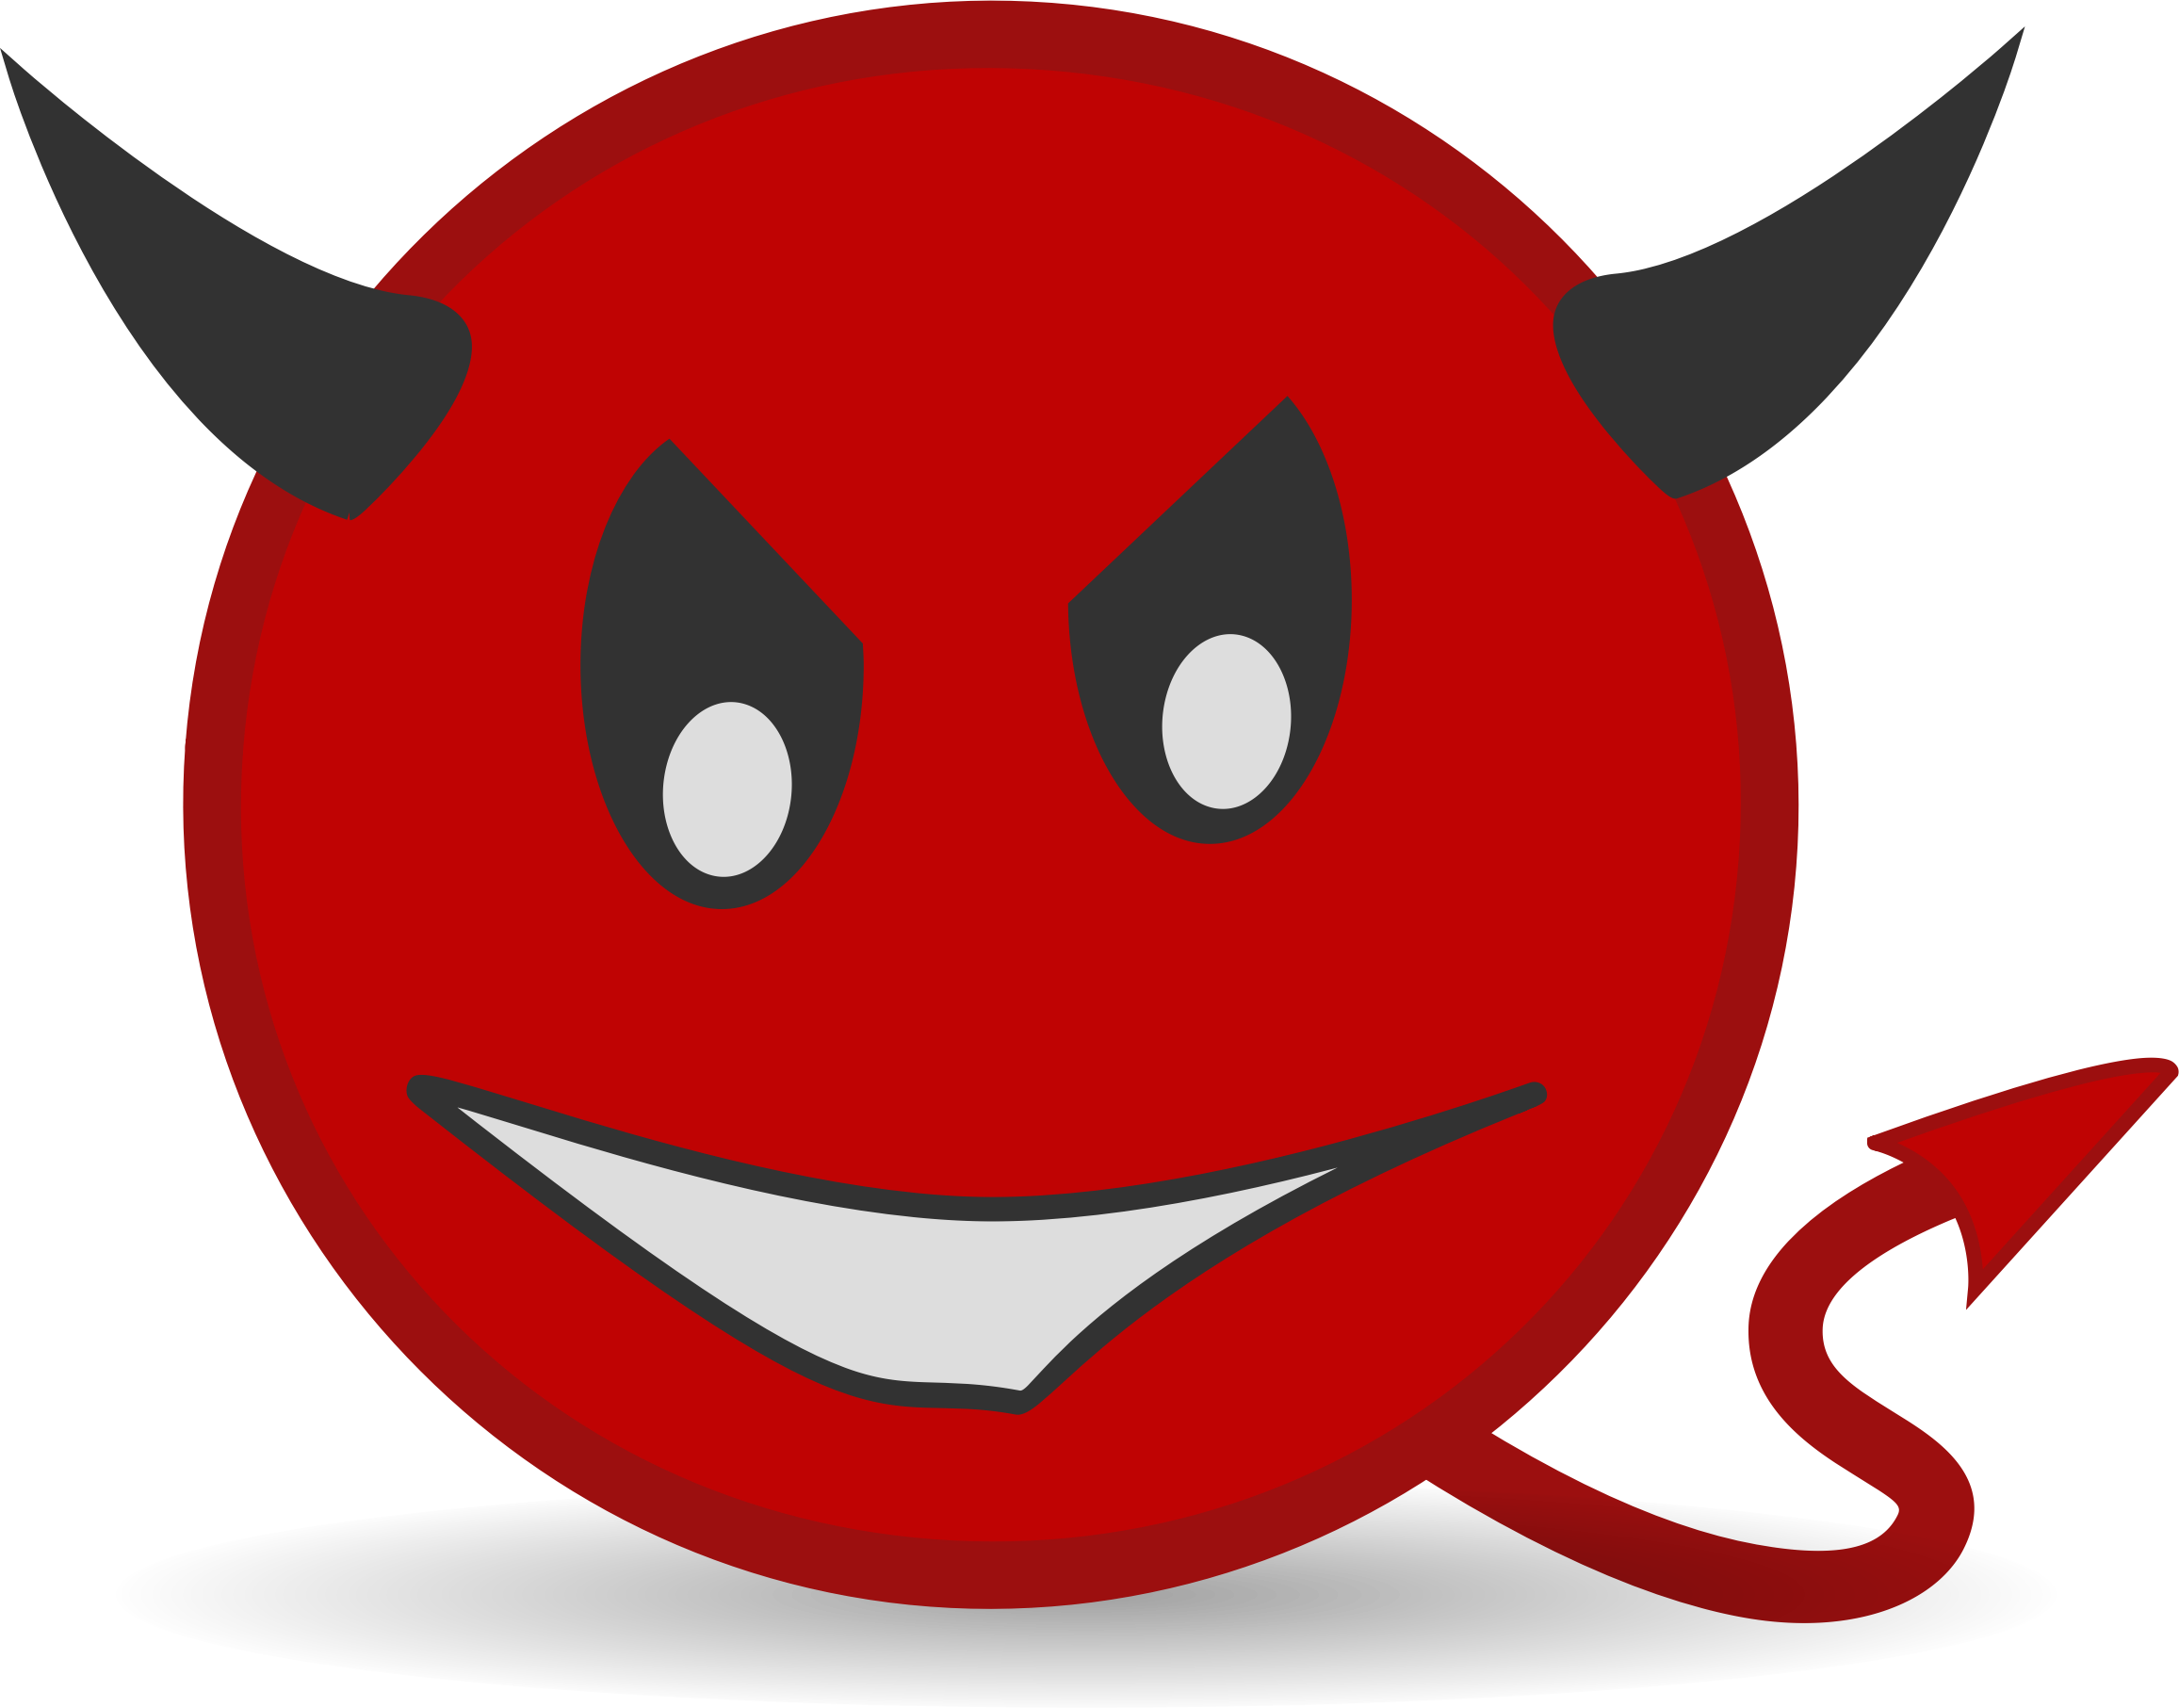 Devil Face Transparent Background PNG Image